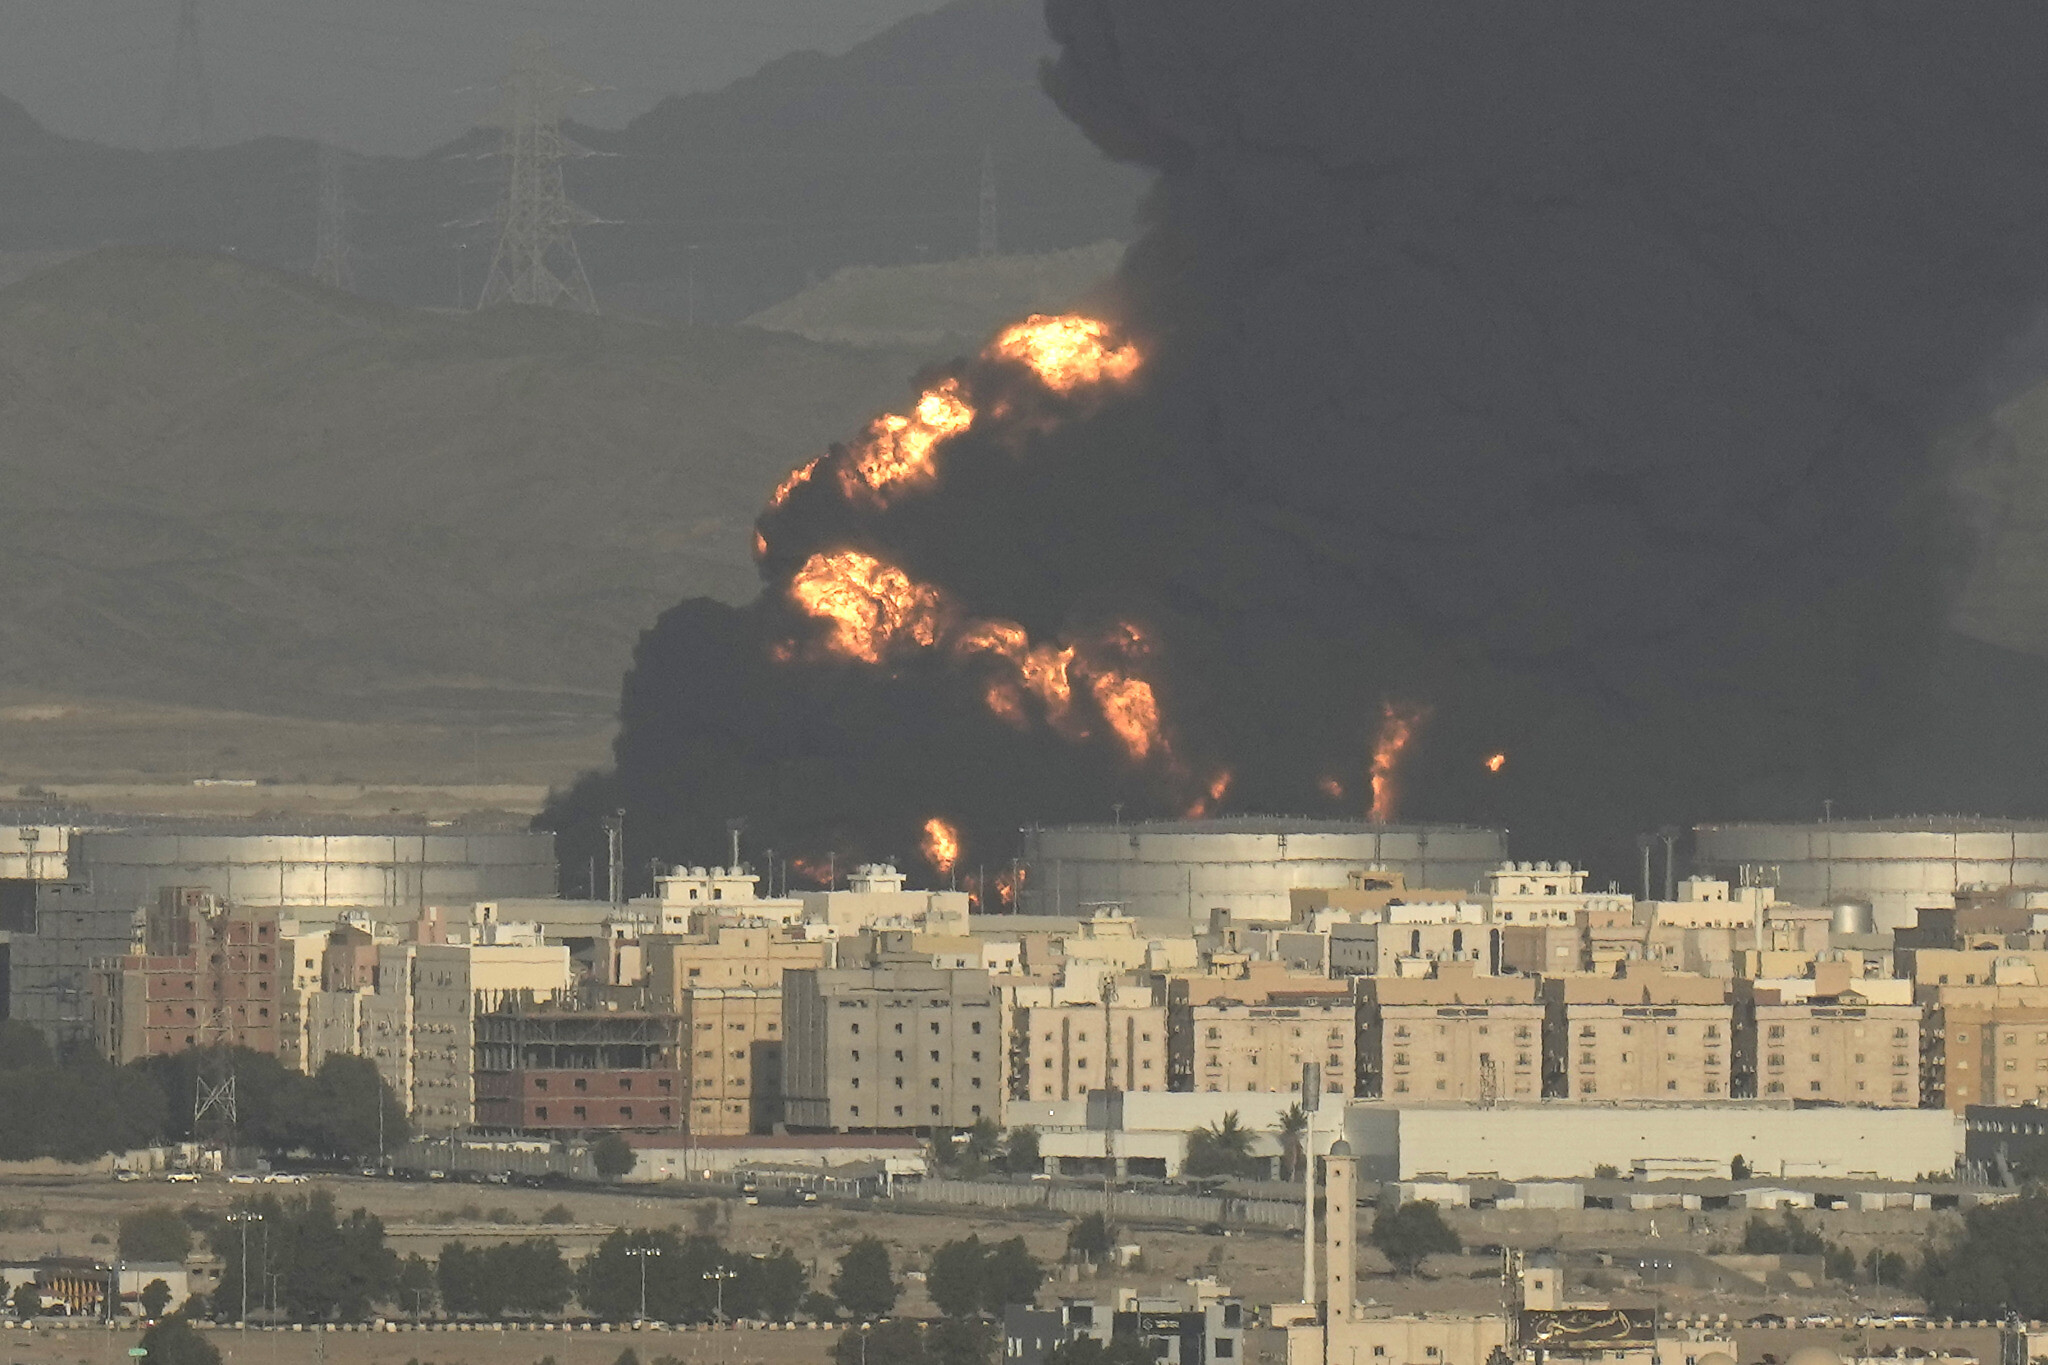 Saudi oil facility on fire in Jeddah